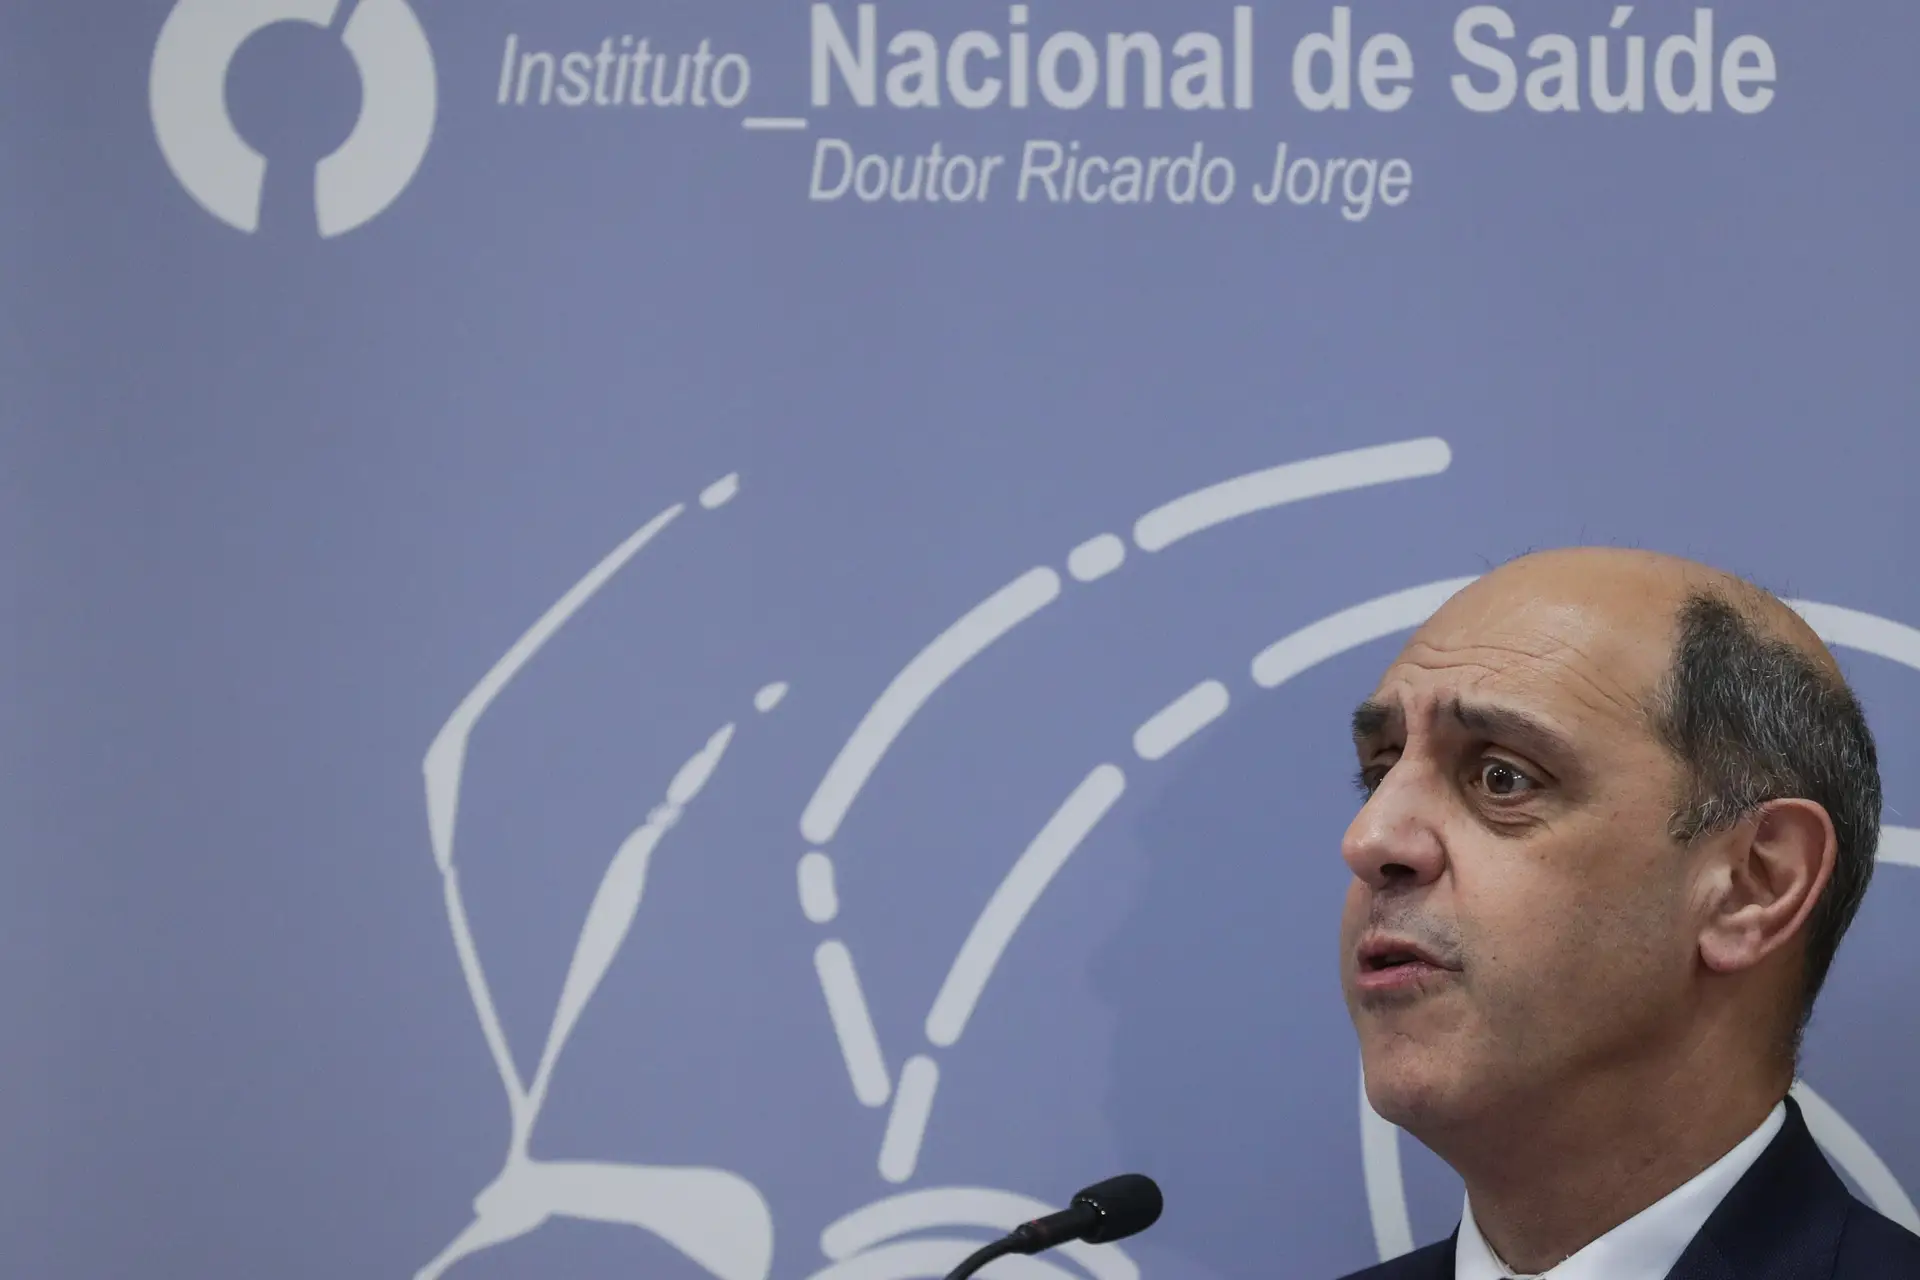 Fenómenos extremos tiveram "profundo efeito" na saúde dos portugueses, diz ministro da Saúde